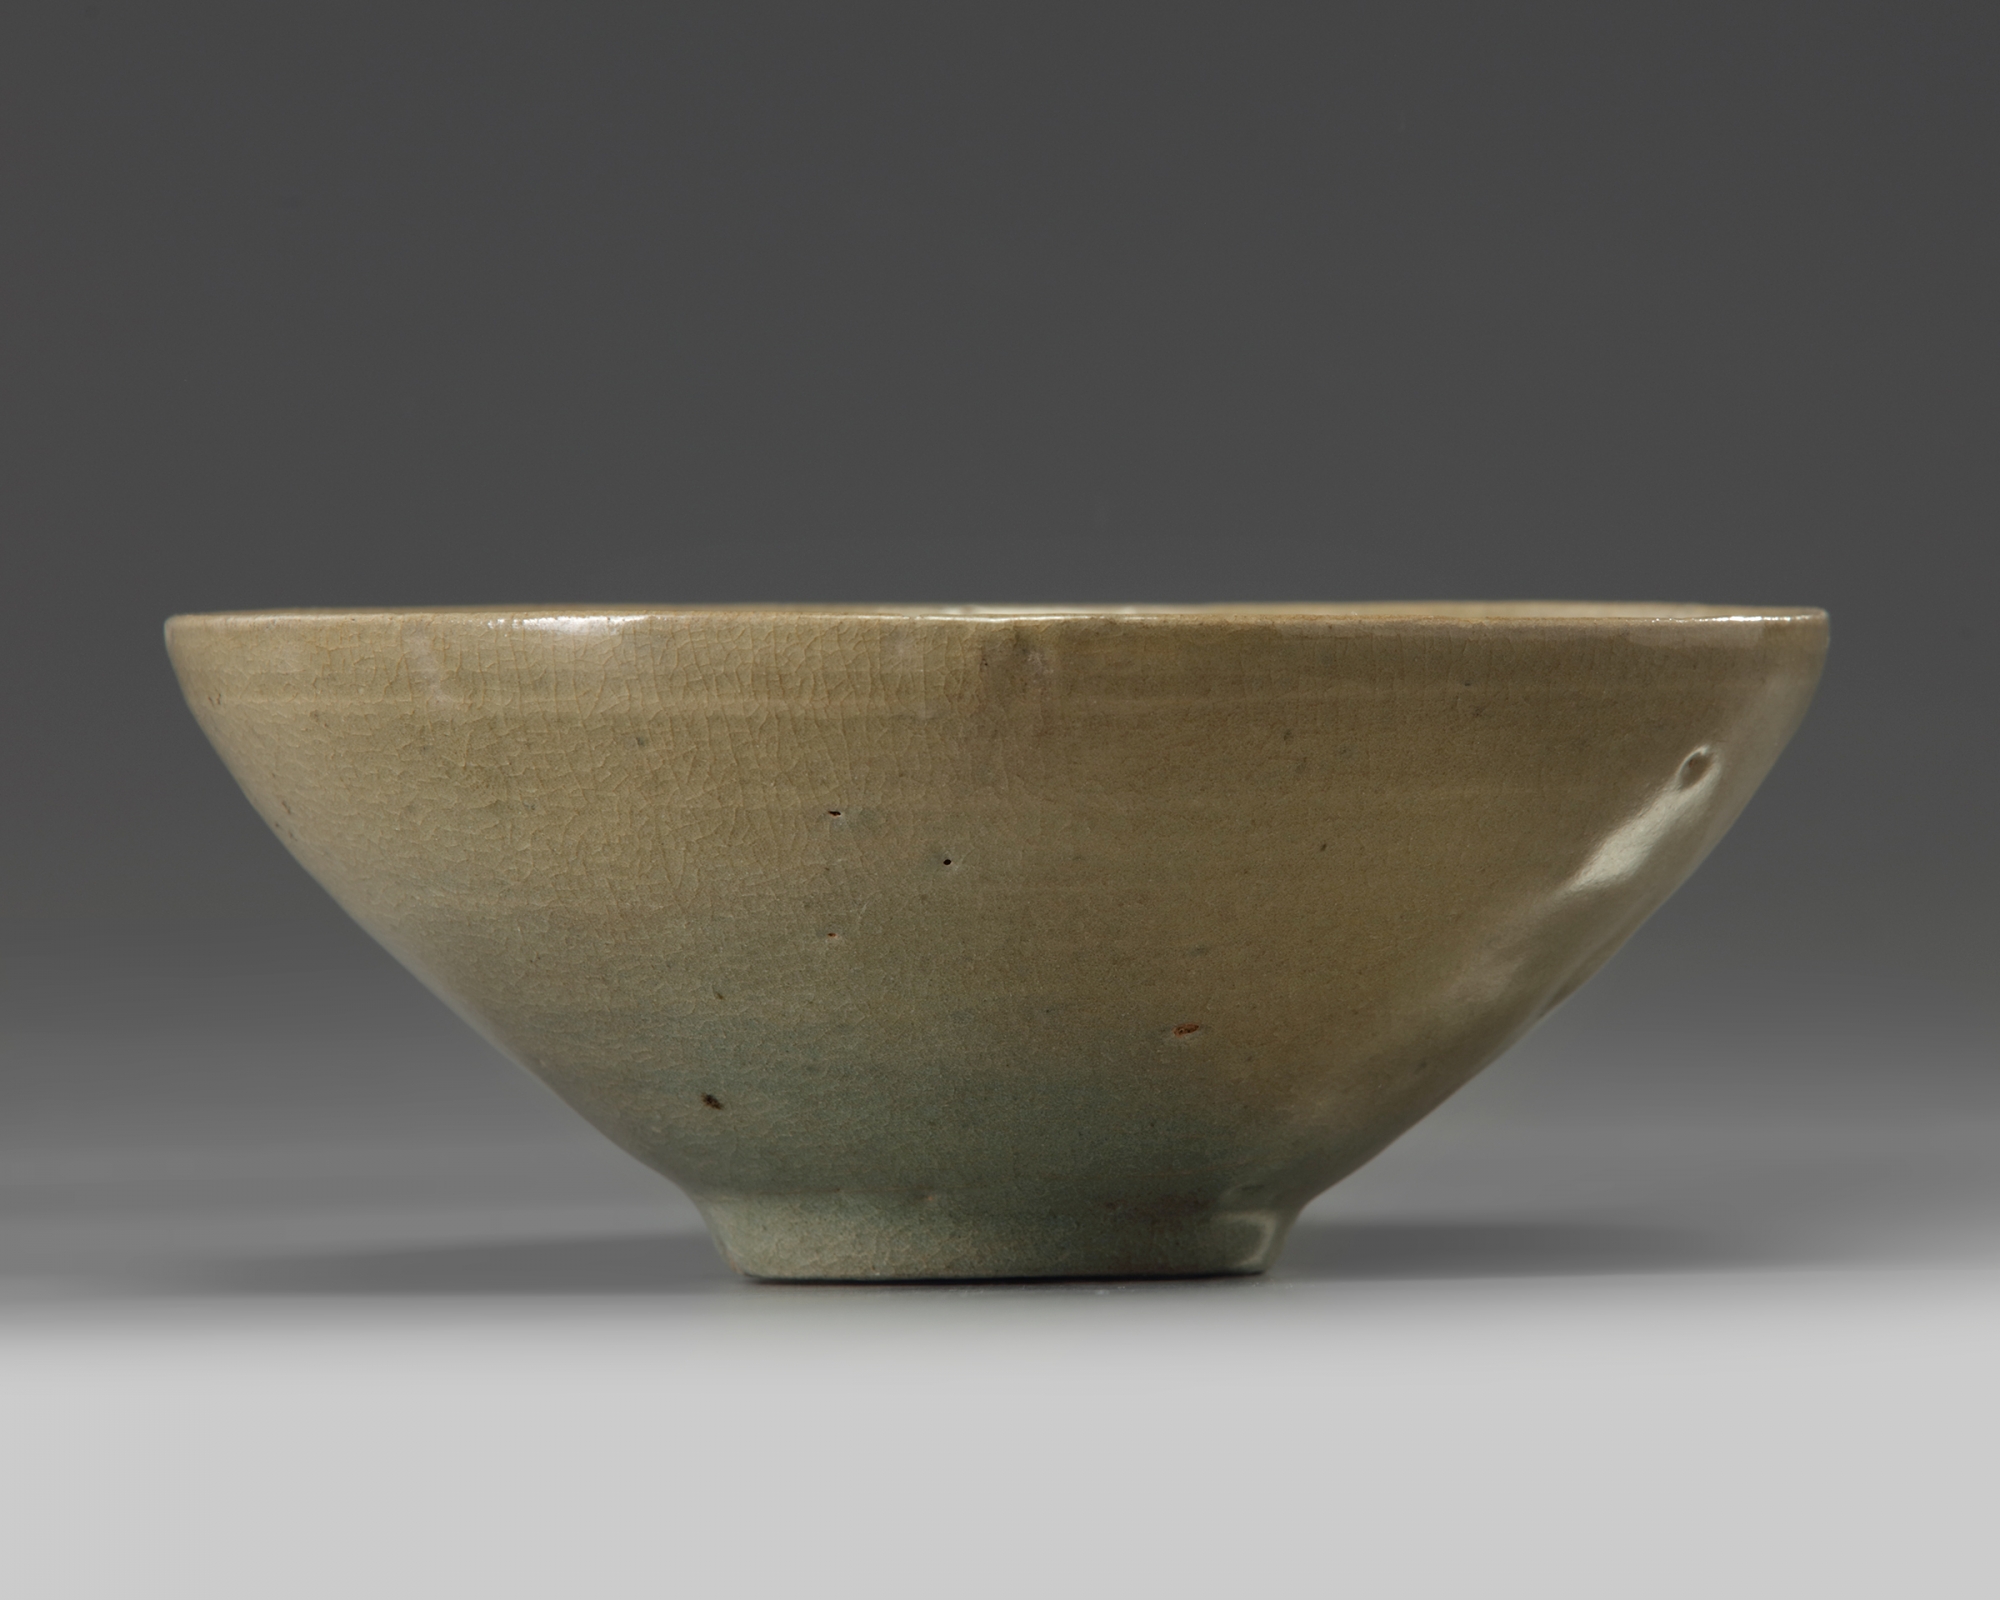 A Korean celadon glazed bowl